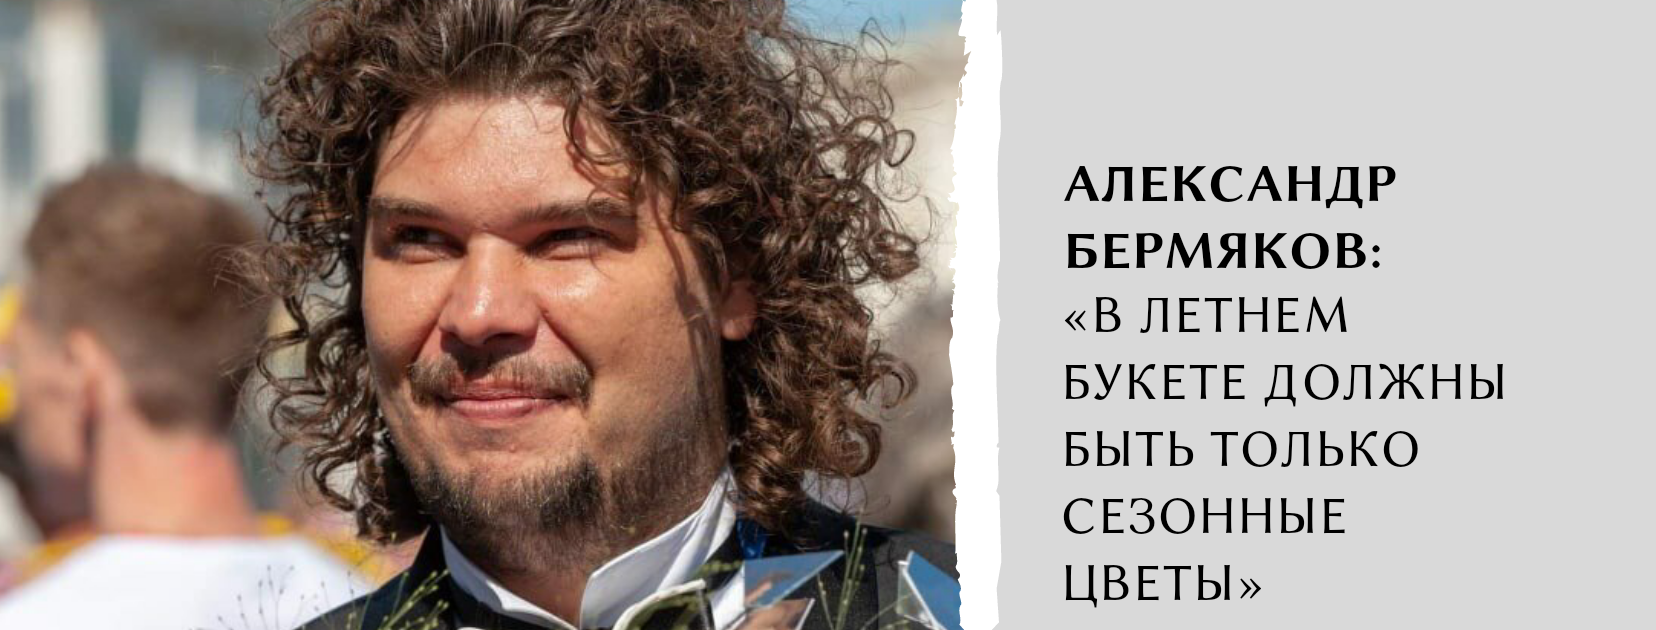 Александр Бермяков: «В летнем букете должны быть только сезонные цветы» в ТК ЭКОПОЛИС premium